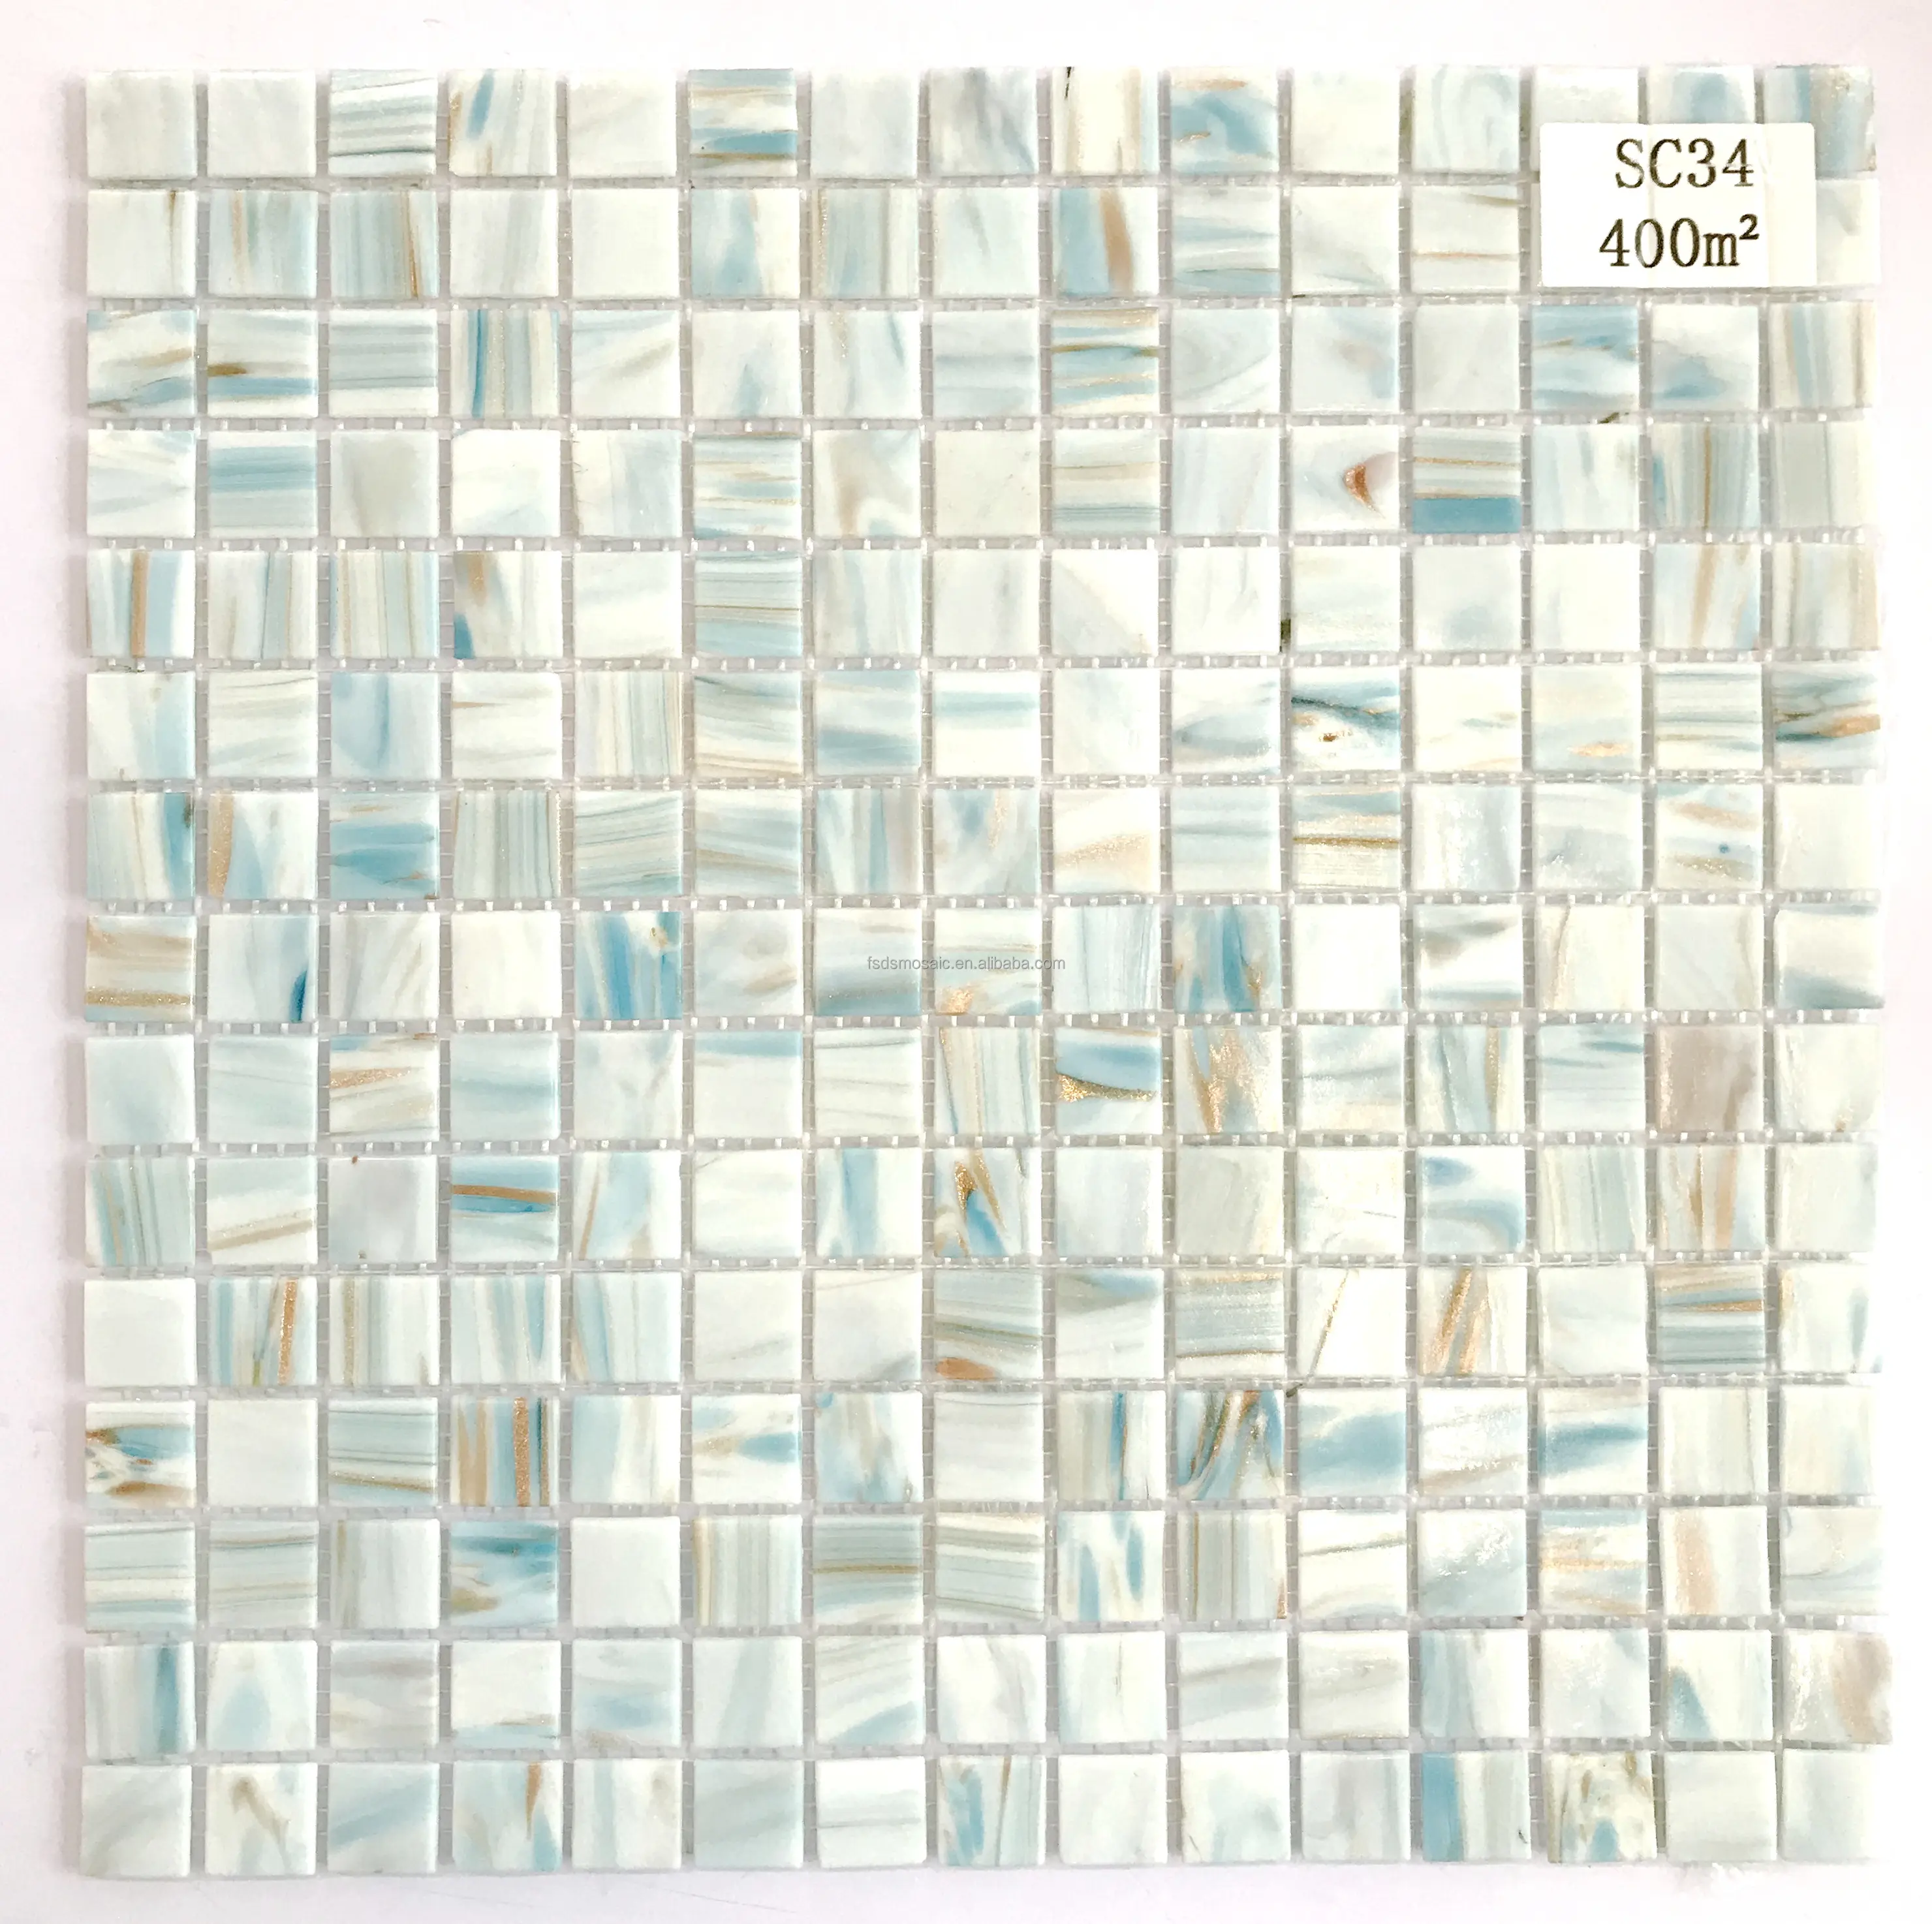 Мраморная мозаика стены ванной комнаты carreaux piscine синяя стеклянная мозаичная плитка для бассейна